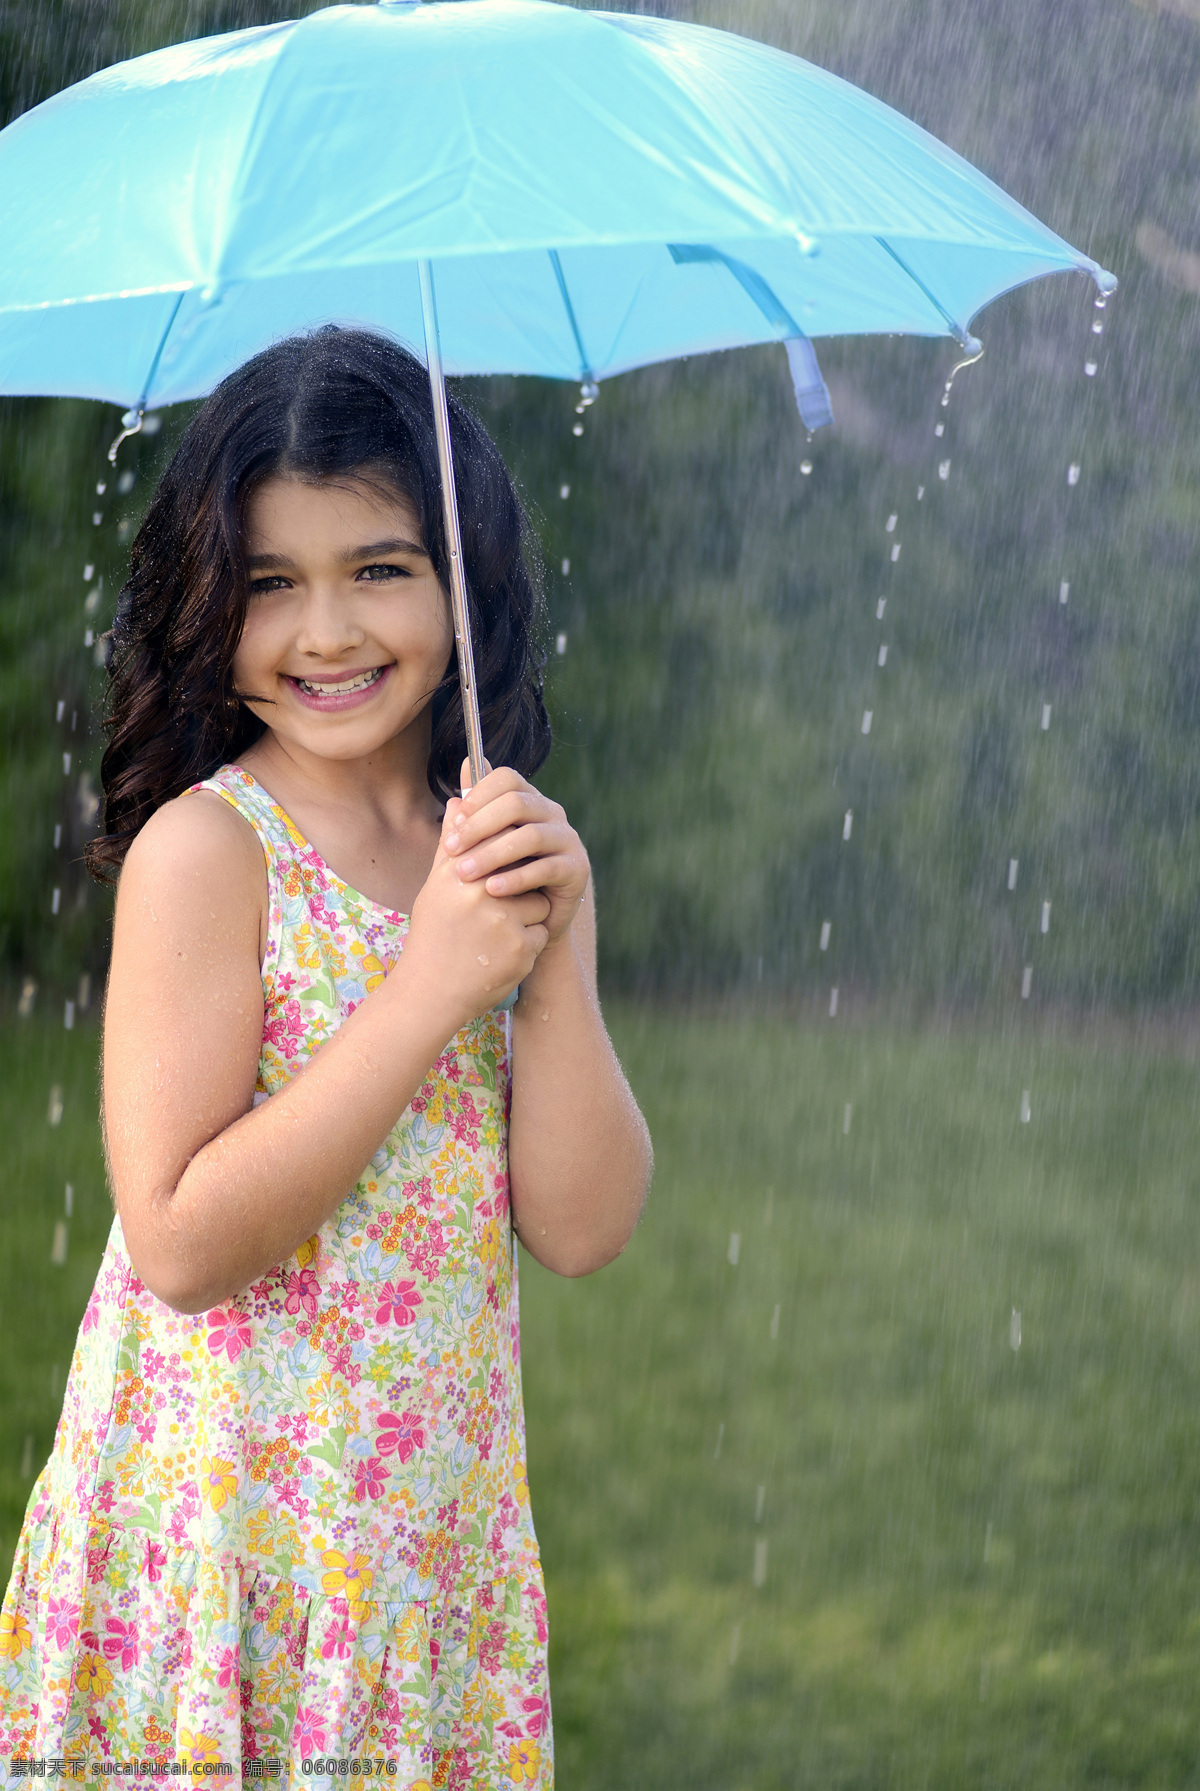 雨 中 伞 女孩 少女 女生 打伞 撑伞 雨中 下雨 雨天 天气 生活人物 人物图片